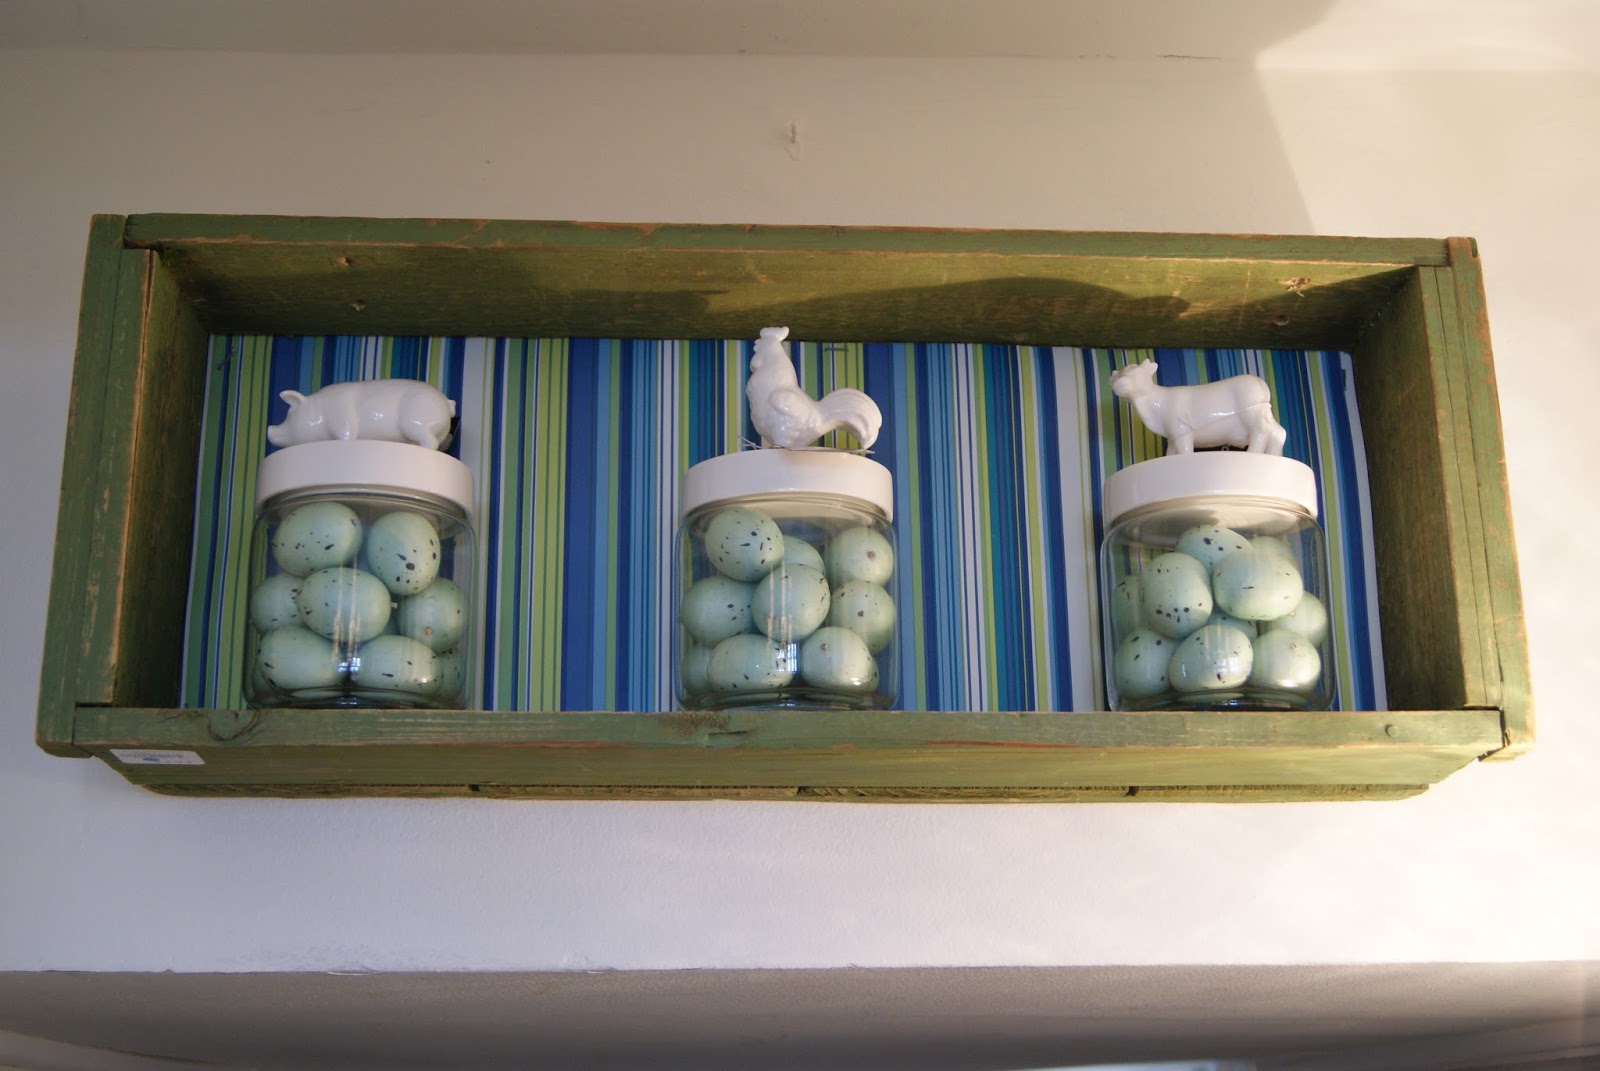 Spring 14 Ideas House by nest full of eggs